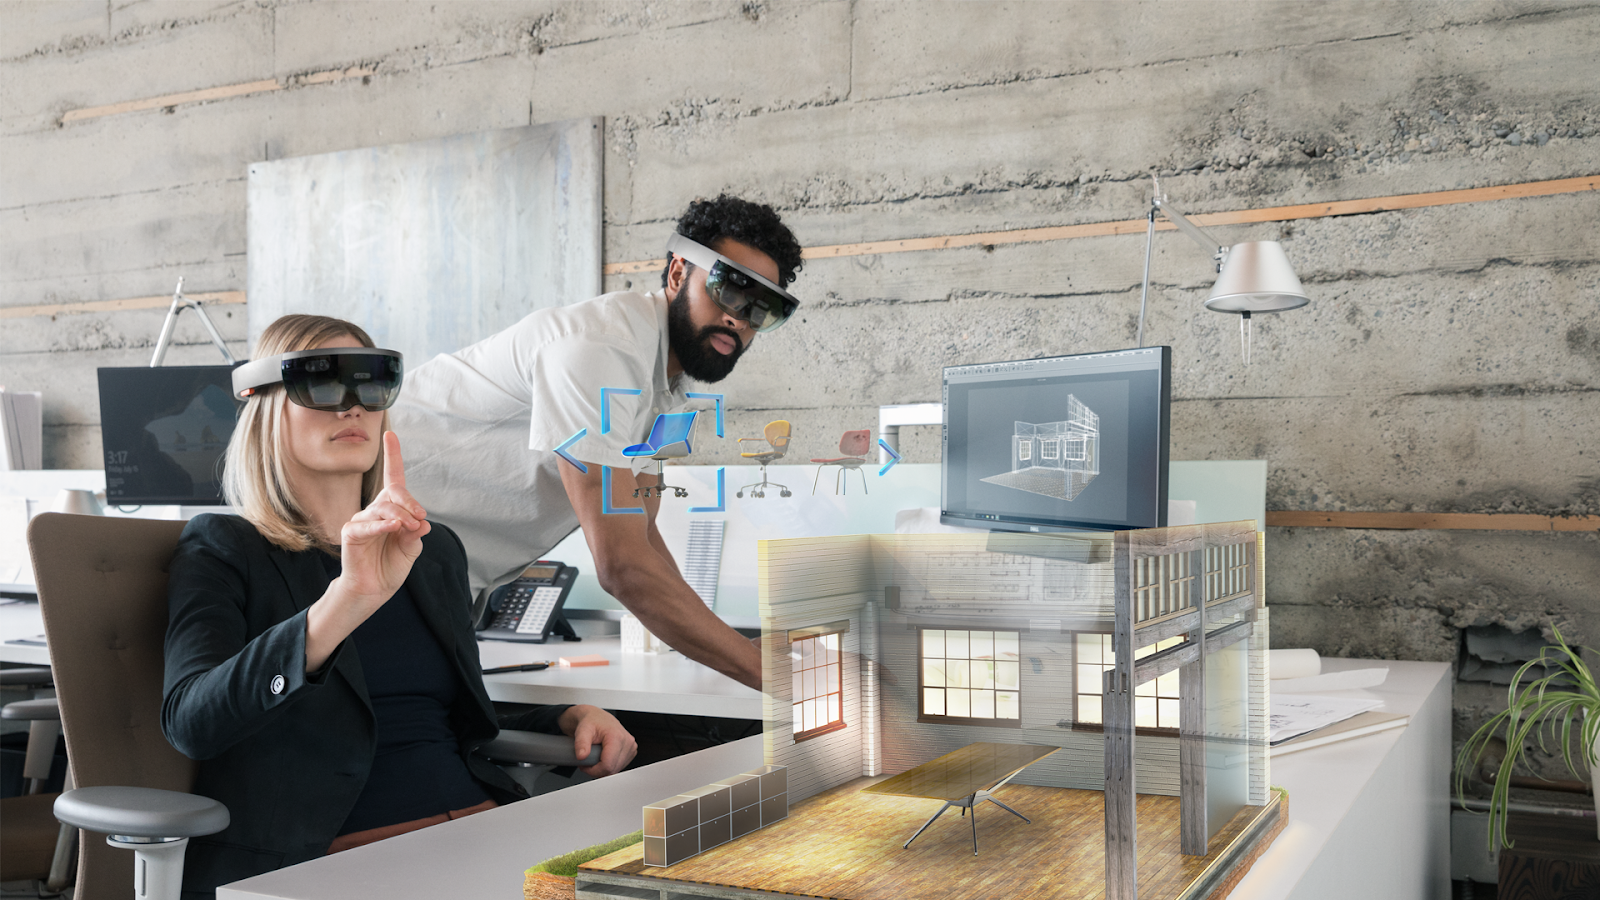 Очки виртуальной реальности: как они работают и где используются.